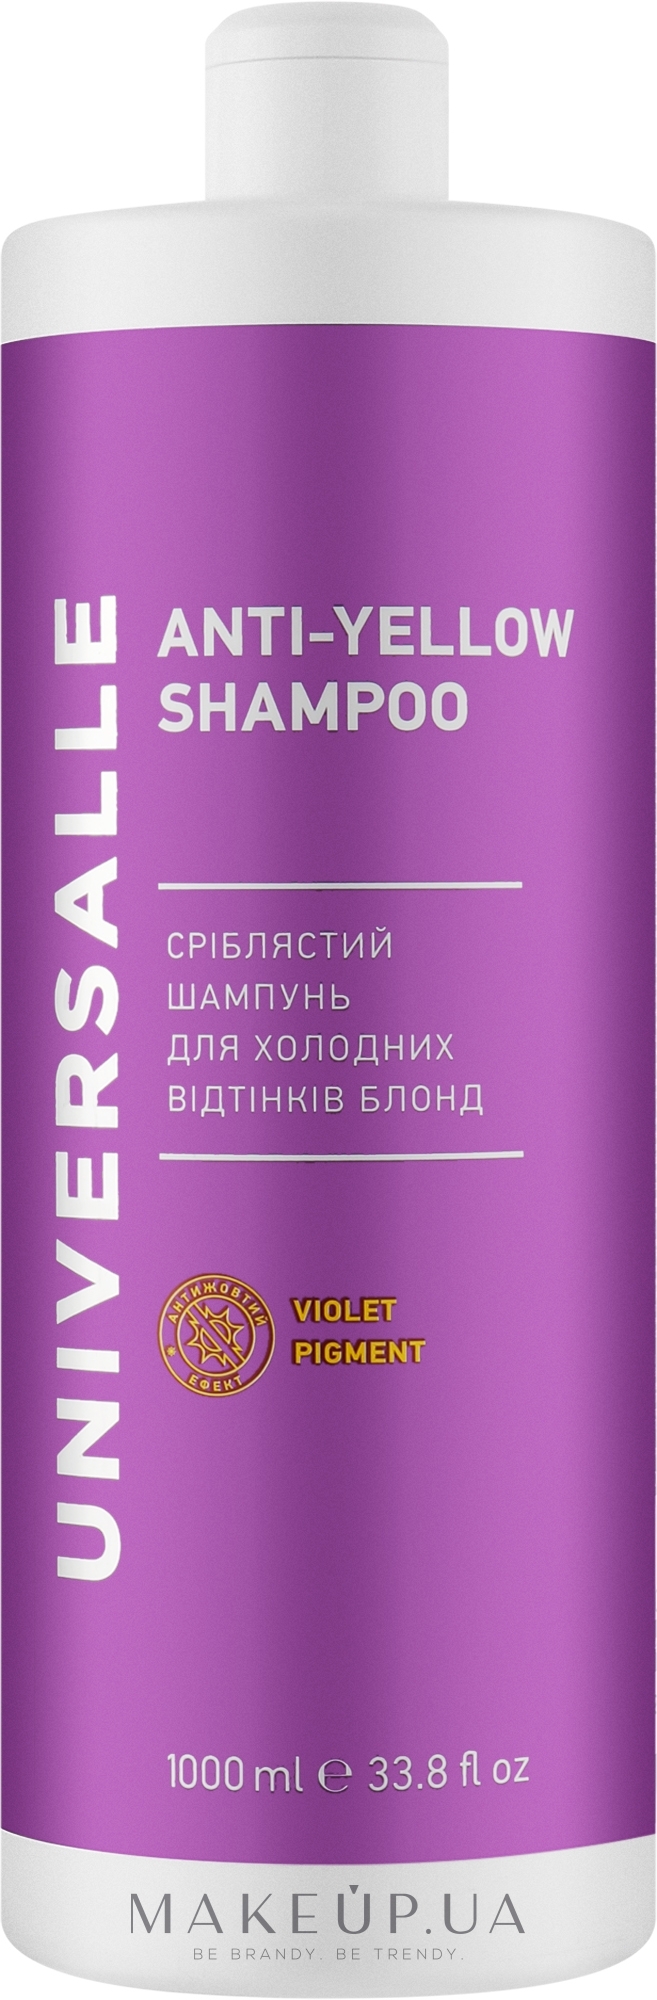 Срібний шампунь для холодних відтінків блонд - Universalle Anti-Yellow Shampoo — фото 1000ml